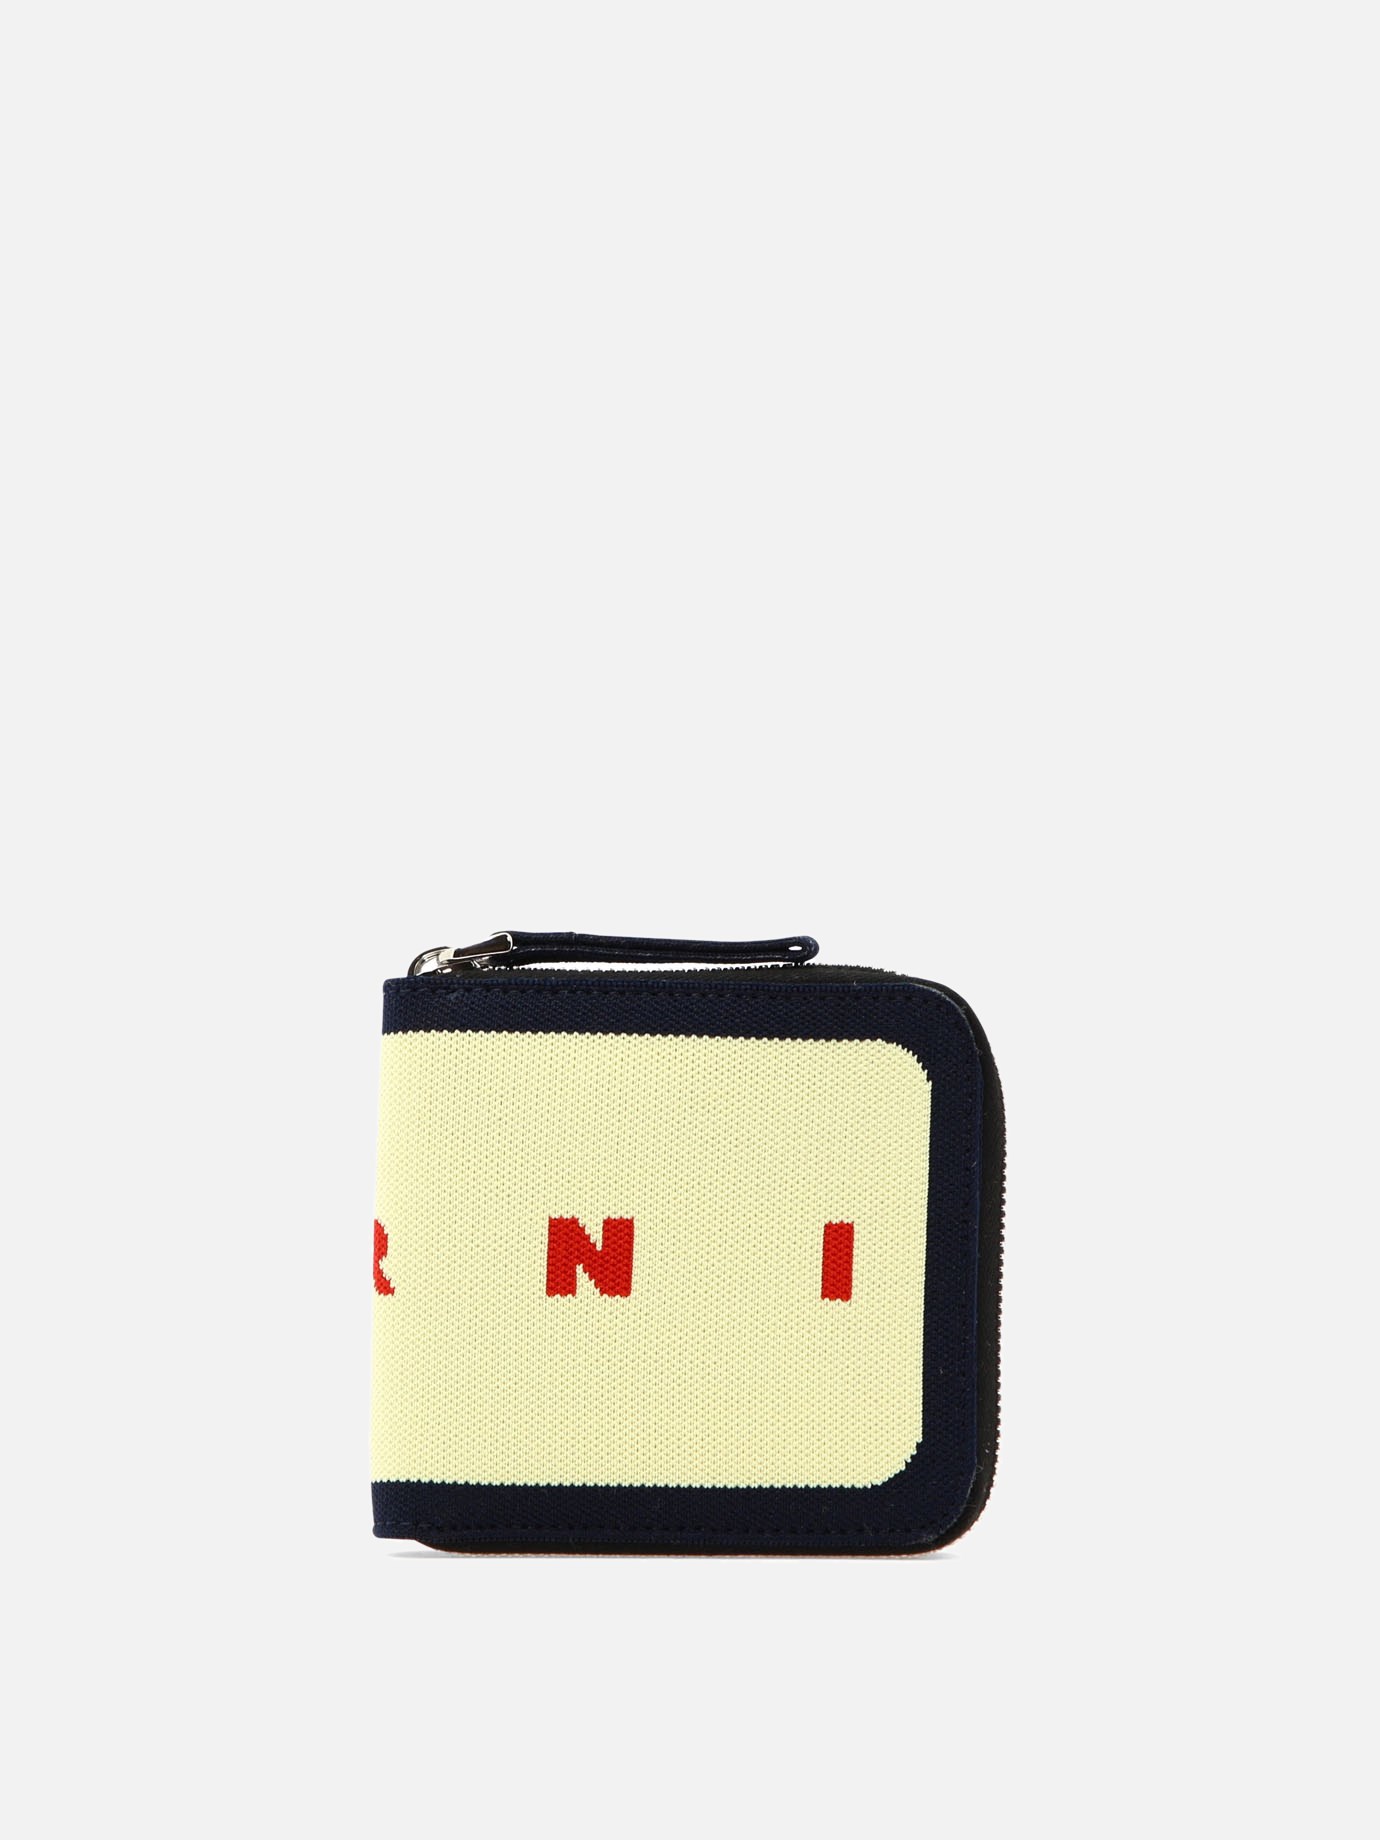 Zipped wallet